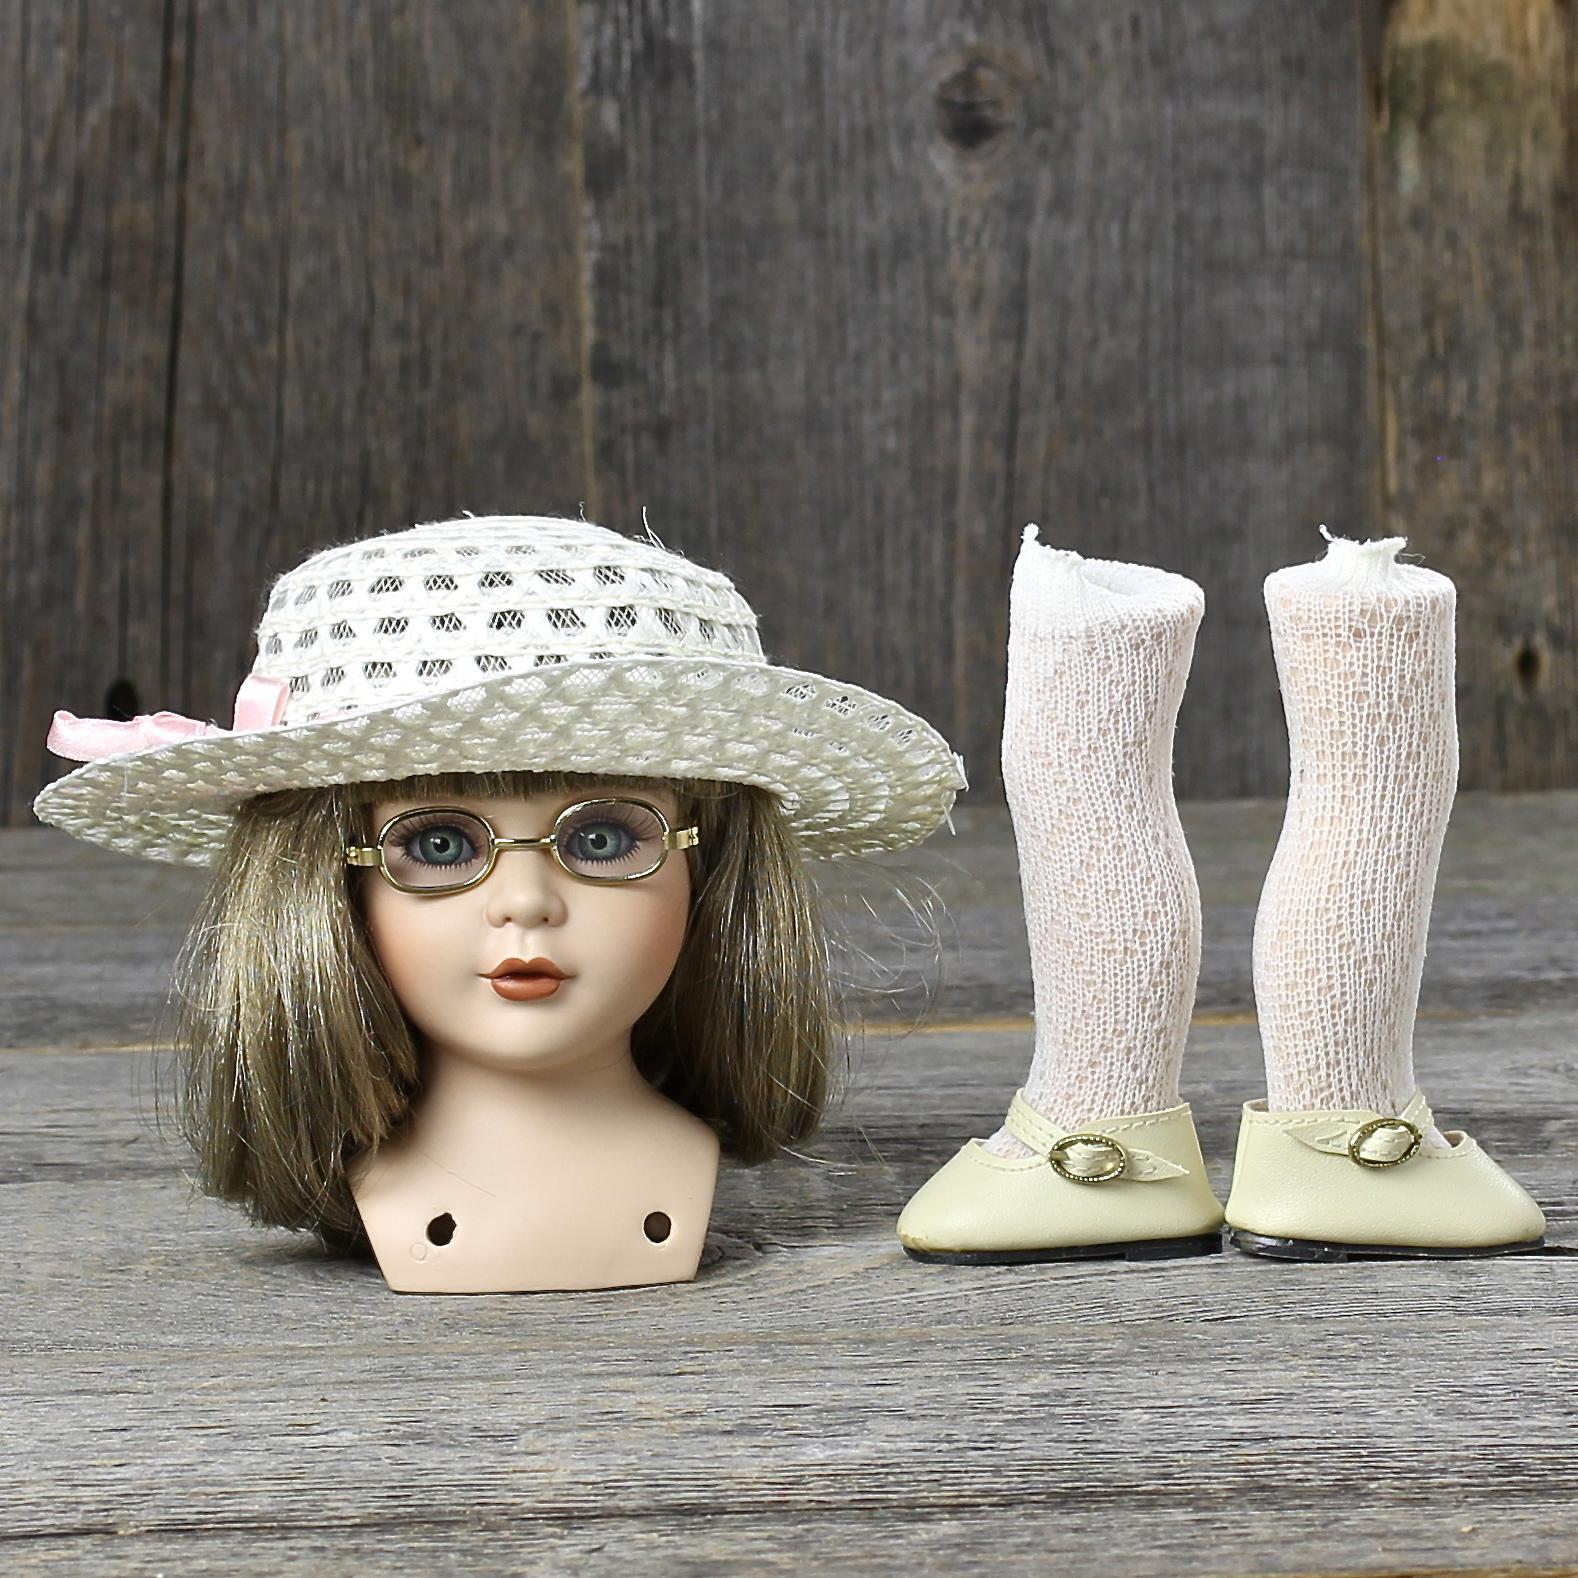 Винтажные детали для куклы с лондонского блошиного рынка Фарфоровый бюст, шляпка, очки, ноги в чулках и туфельках